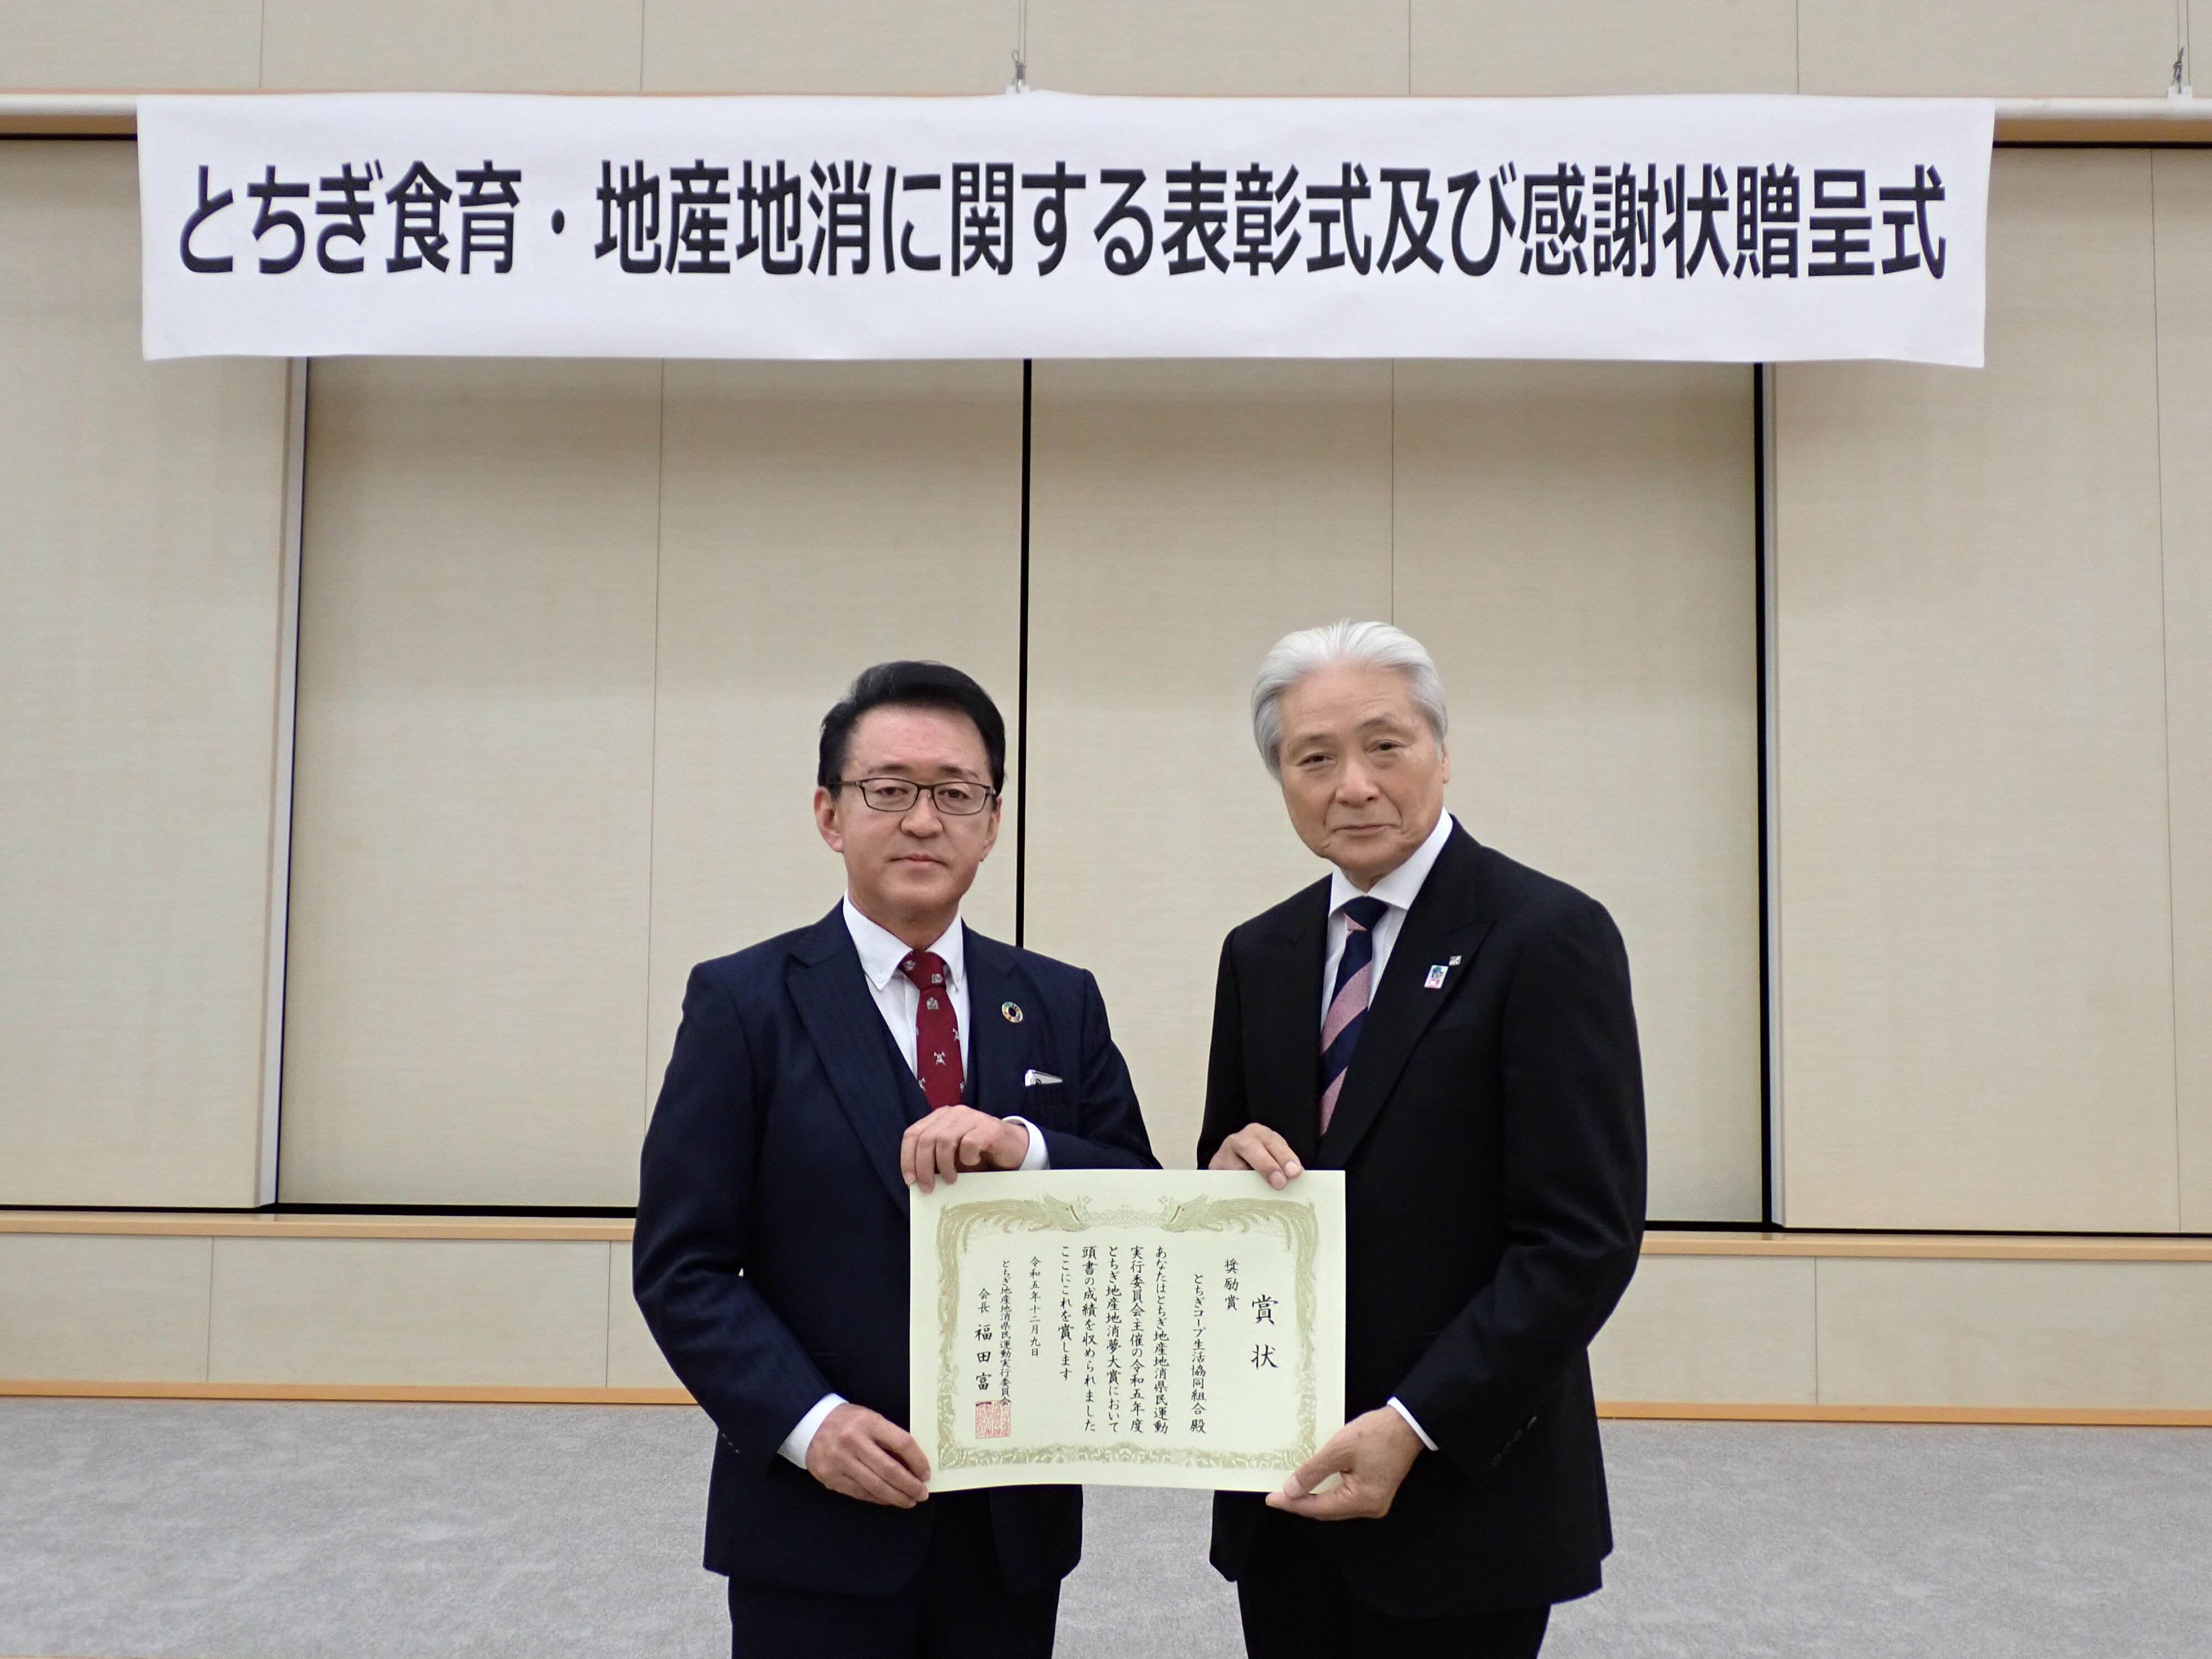 福田富一 栃木県知事より、塚原政雄 とちぎコープ理事長へ表彰状が手渡されました